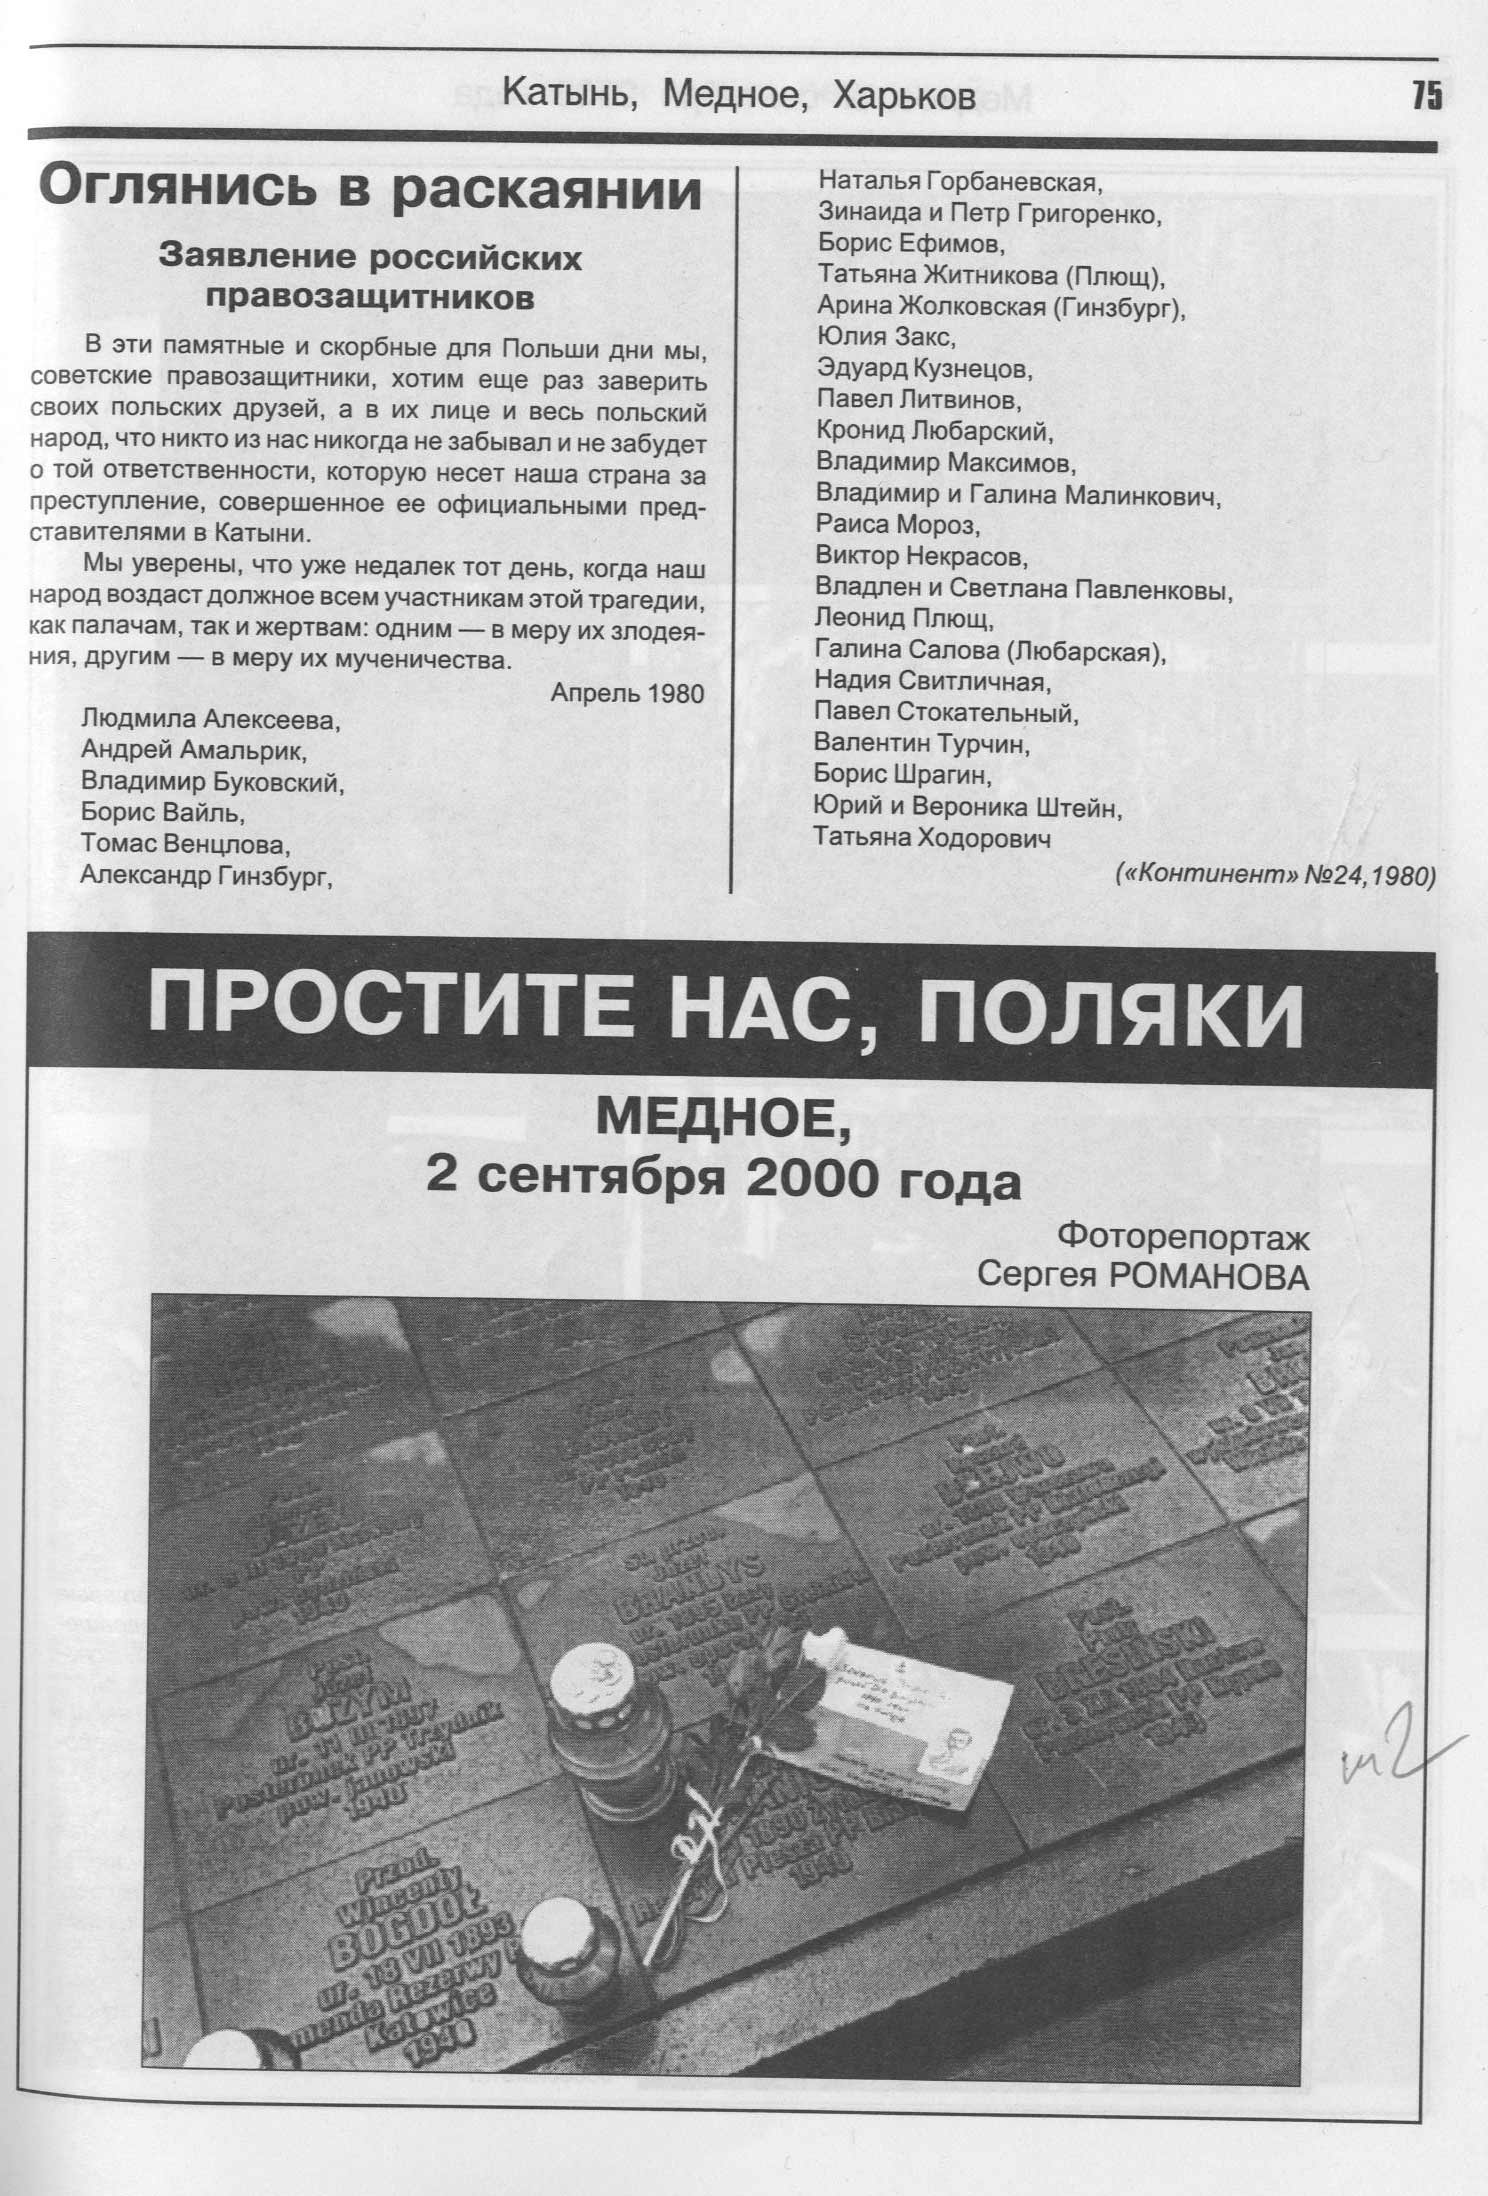 Заявление советских правозащитников о Катыни. 1980